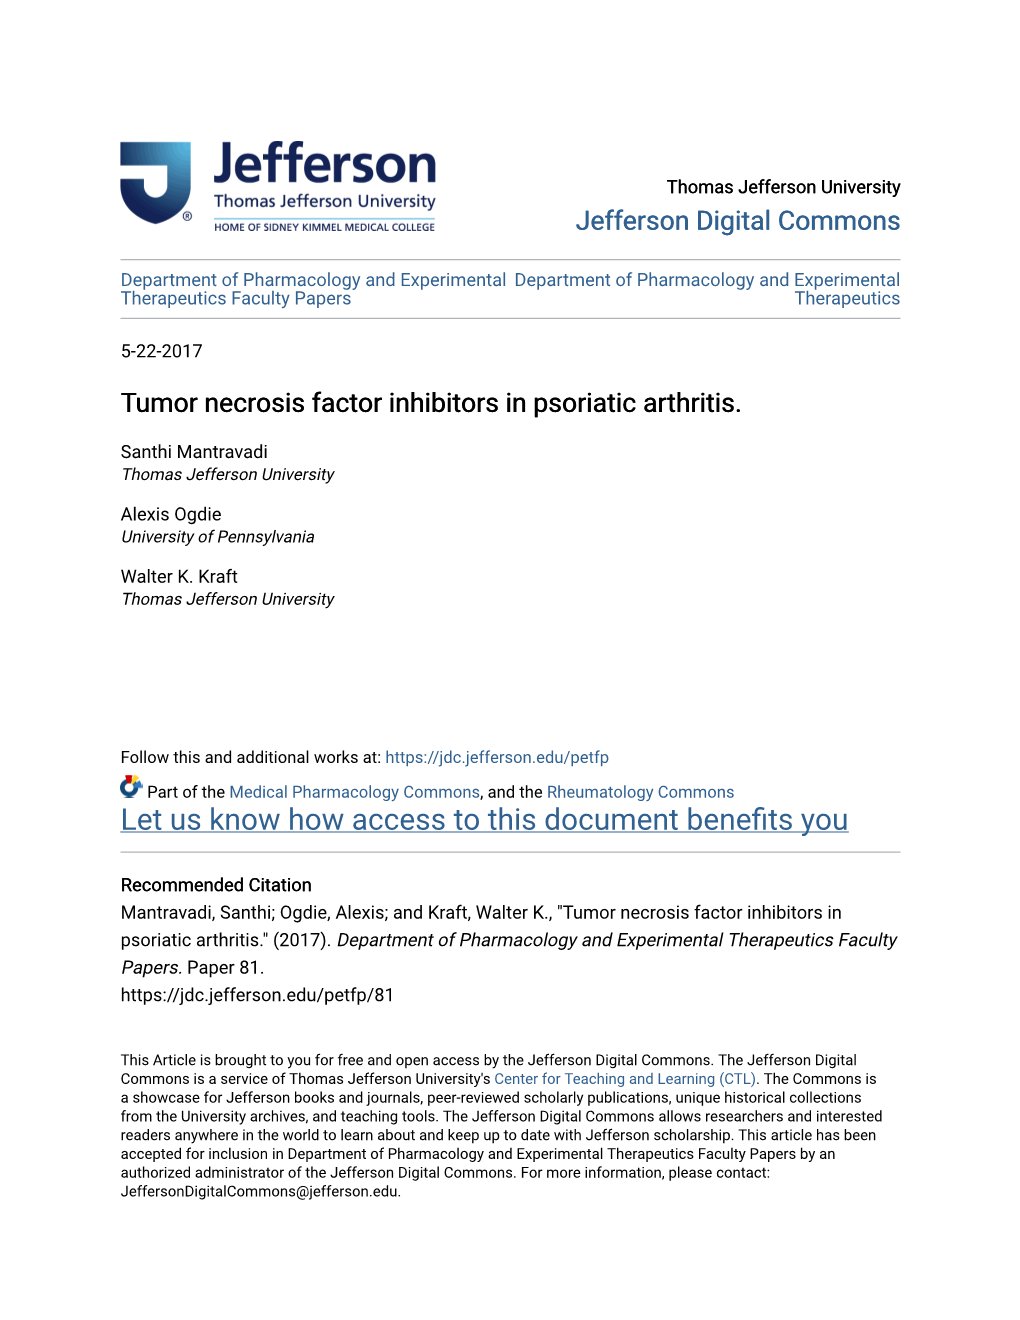 Tumor Necrosis Factor Inhibitors in Psoriatic Arthritis